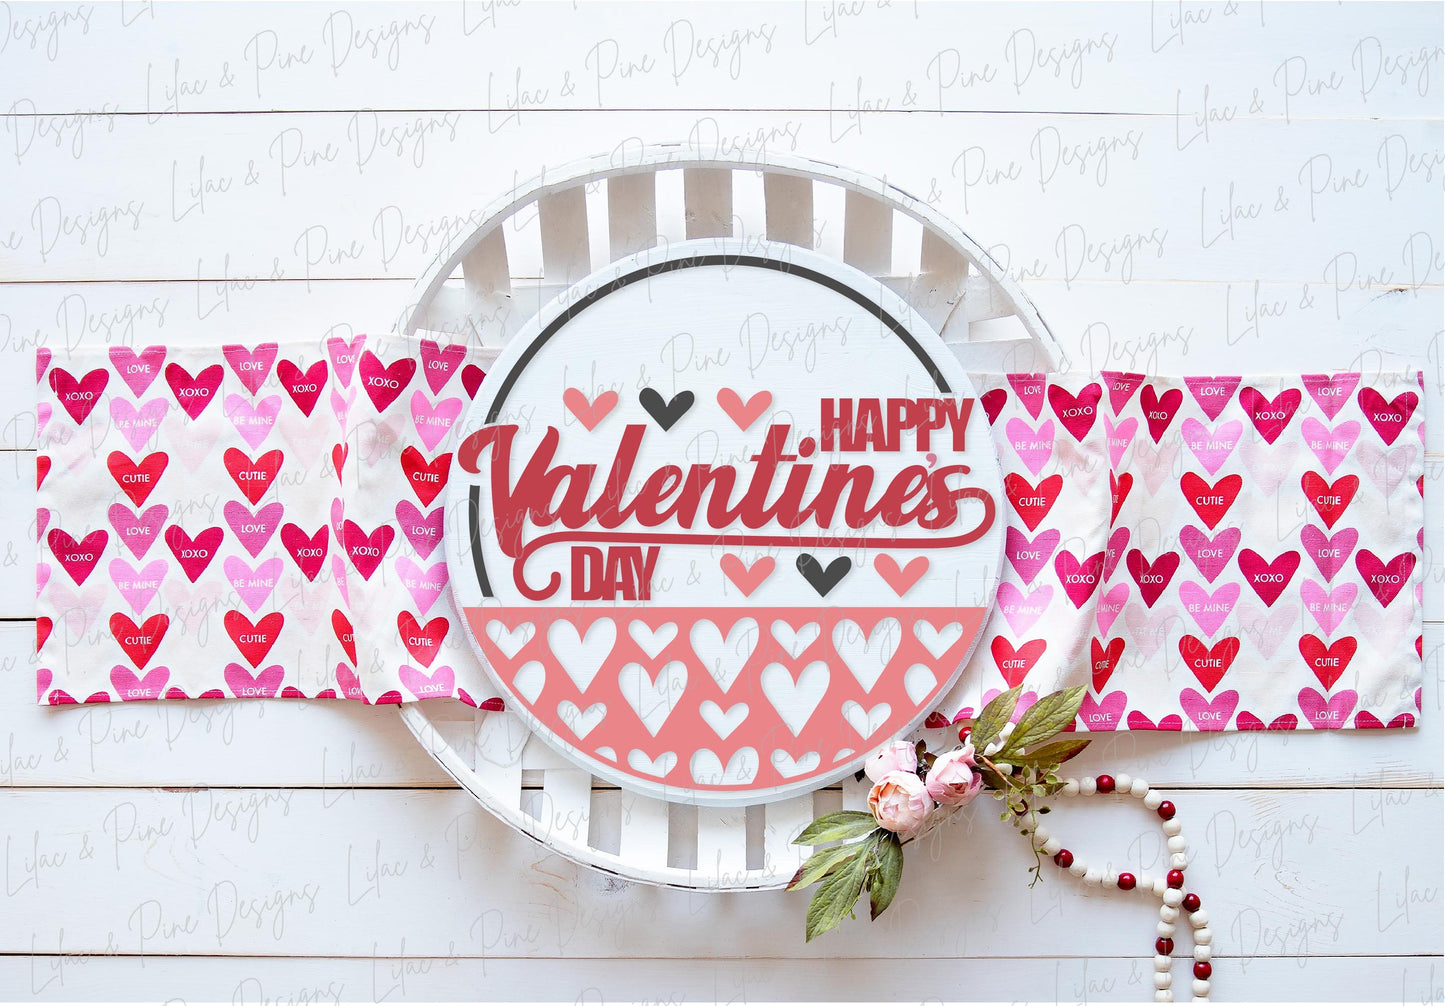 Happy Valentine's Day sign SVG, Valentine door hanger, Love Welcome round sign SVG, Valentine's Day decor, Glowforge SVG, laser cut file